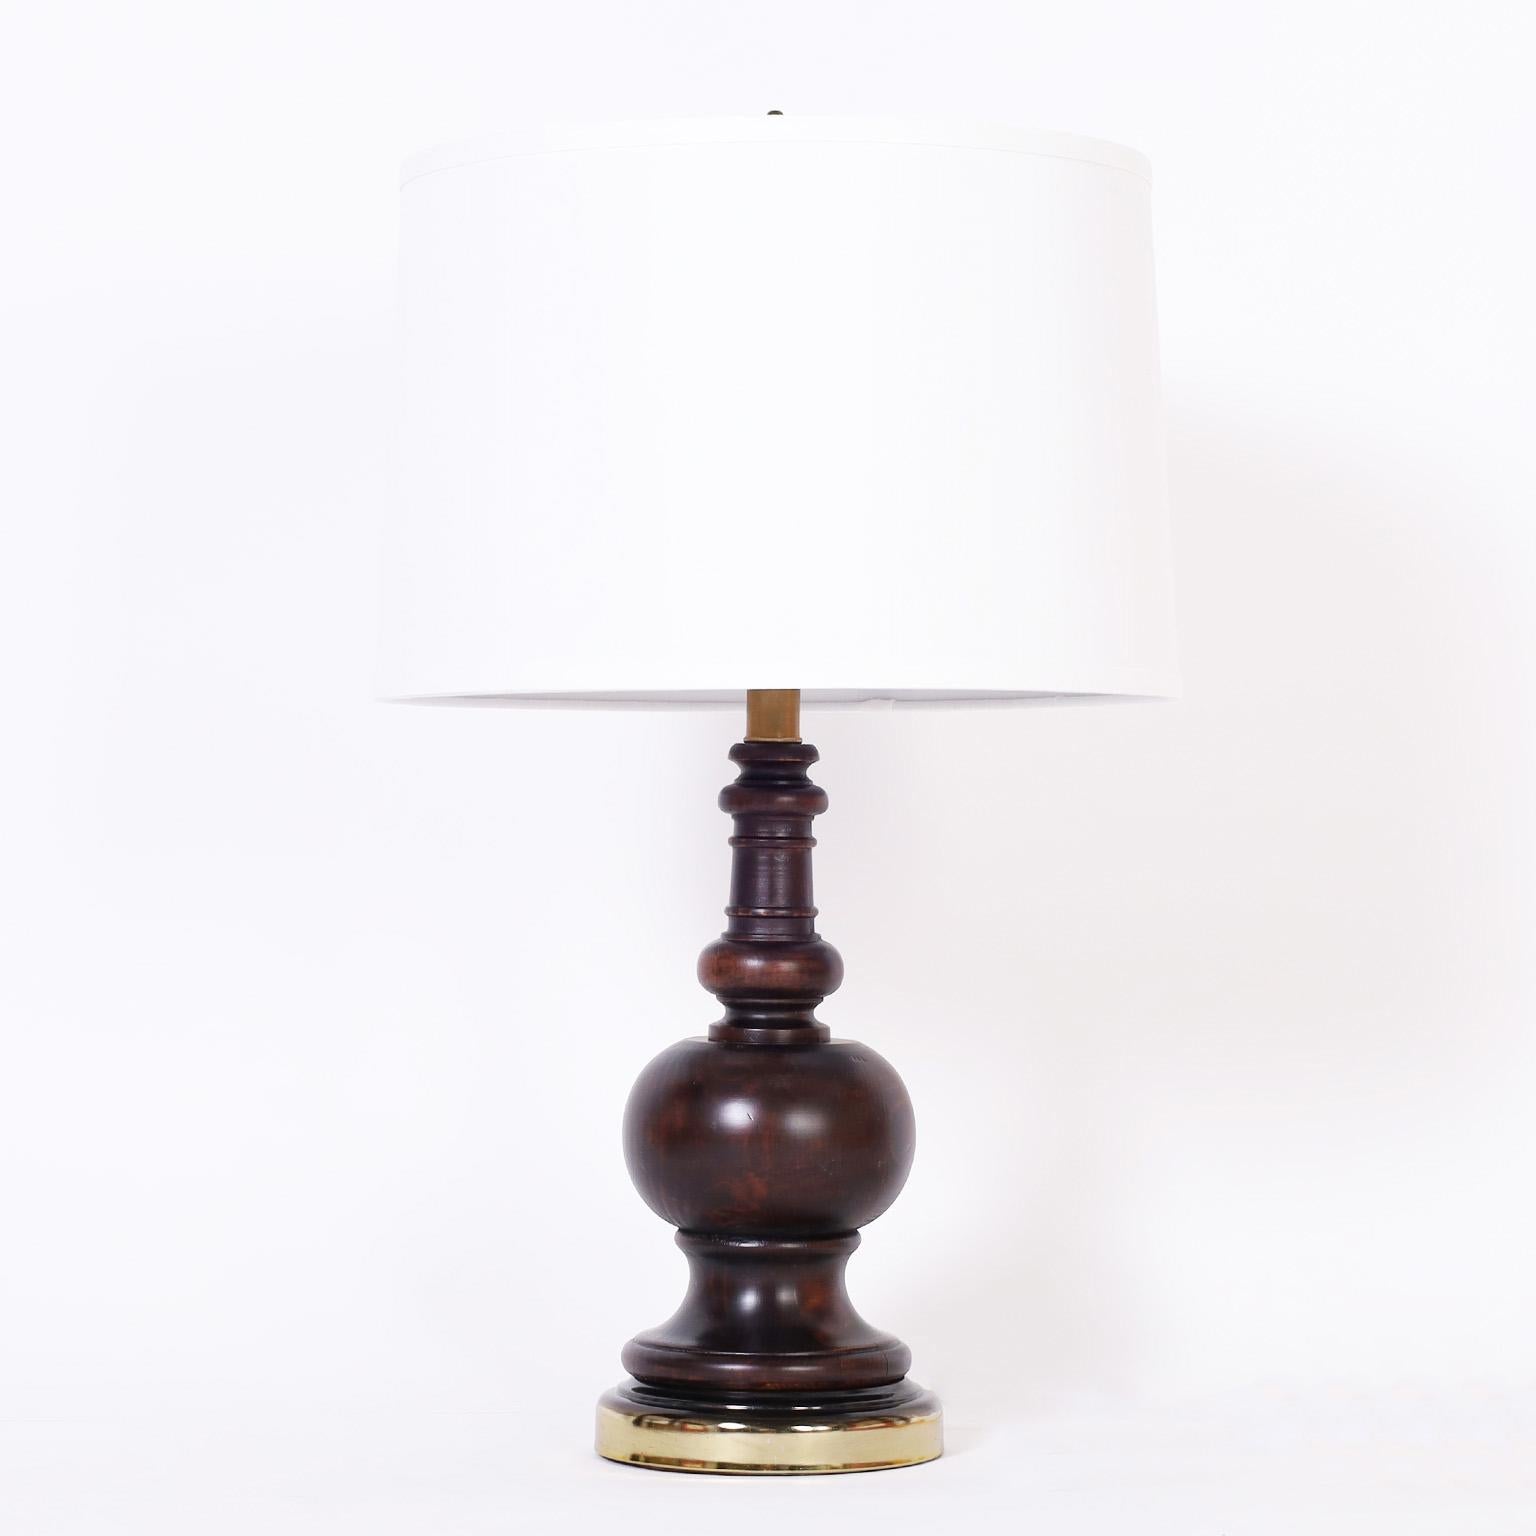 Lampes de table de style colonial britannique du milieu du siècle, fabriquées en bois tourné, de forme classique et de finition acajou. Deux paires disponibles.